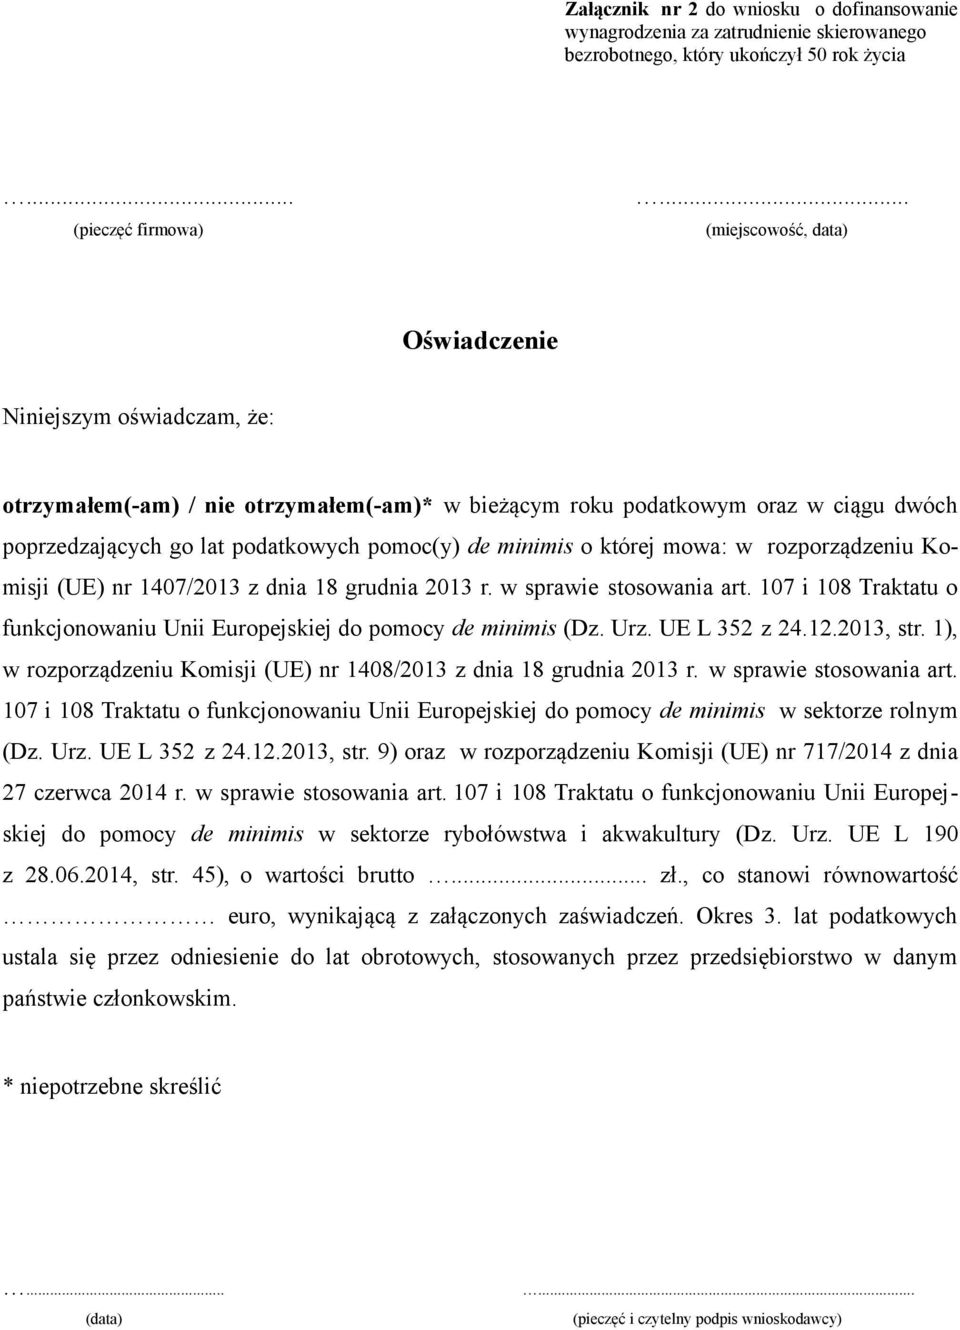 minimis o której mowa: w rozporządzeniu Komisji (UE) nr 1407/2013 z dnia 18 grudnia 2013 r. w sprawie stosowania art. 107 i 108 Traktatu o funkcjonowaniu Unii Europejskiej do pomocy de minimis (Dz.